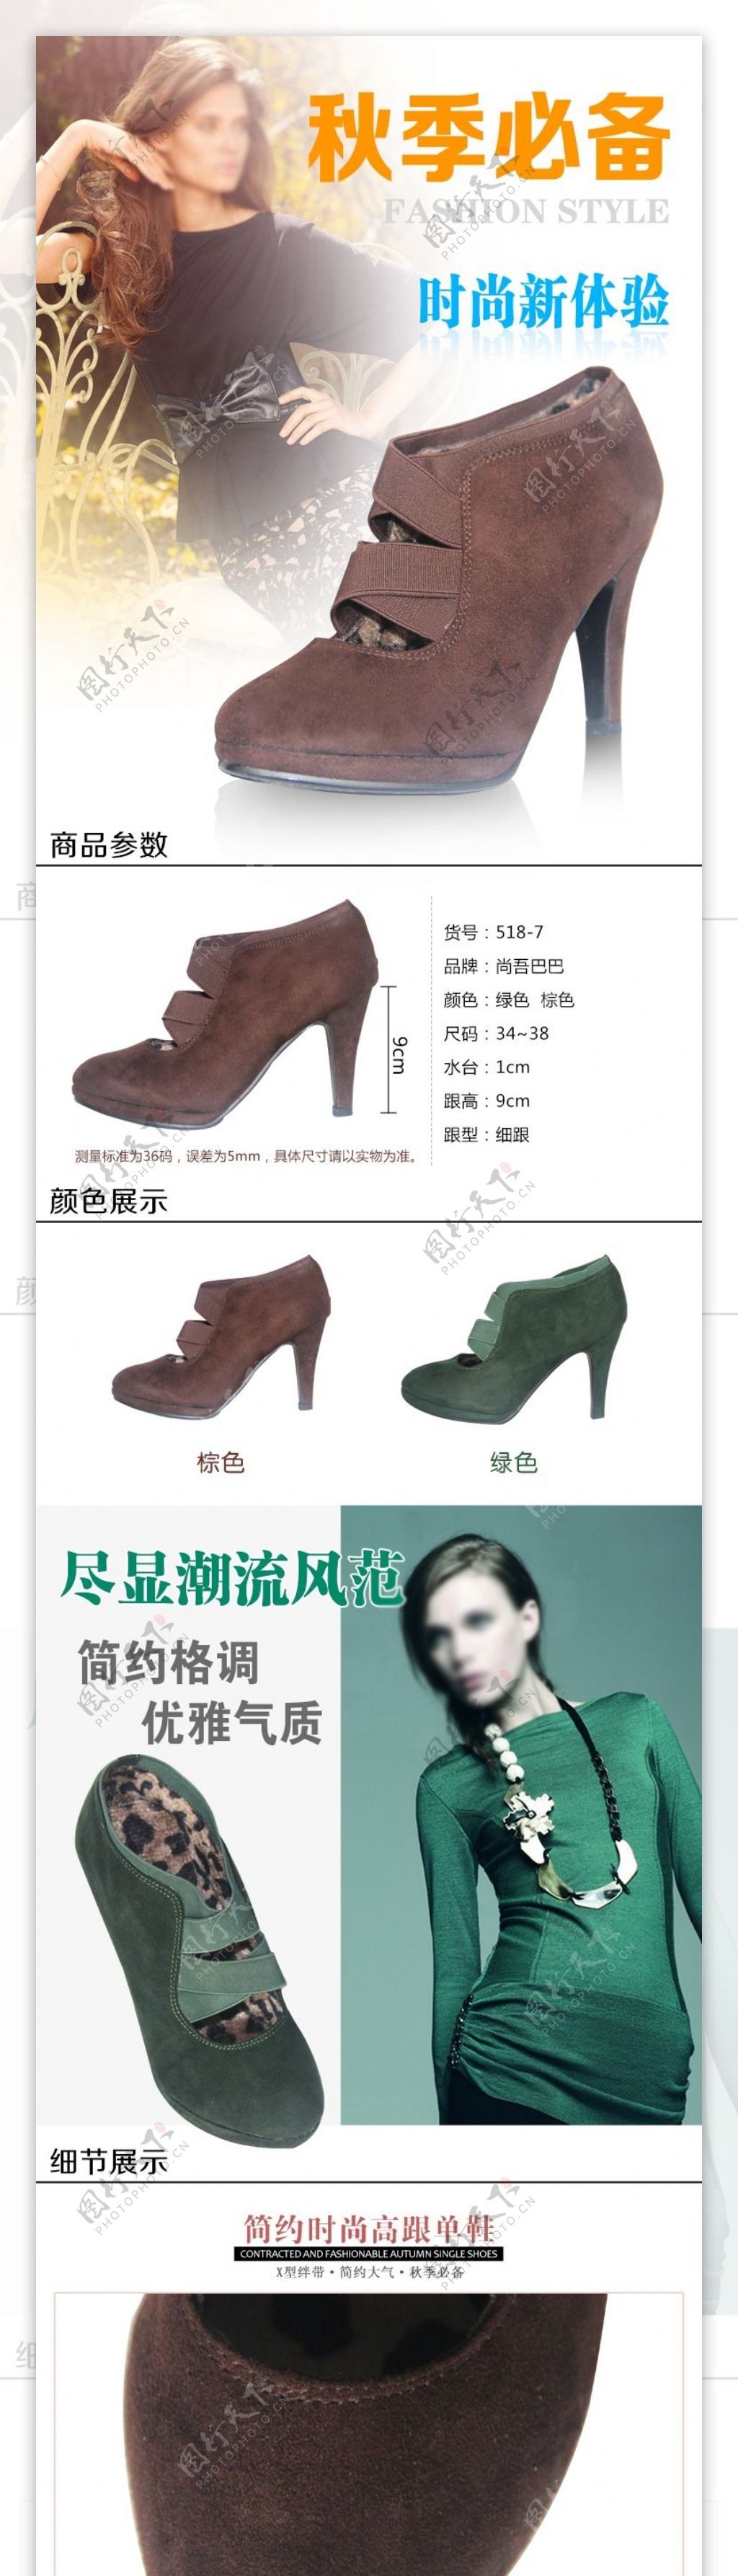 淘宝天猫秋季女鞋女高跟短靴详情页面设计